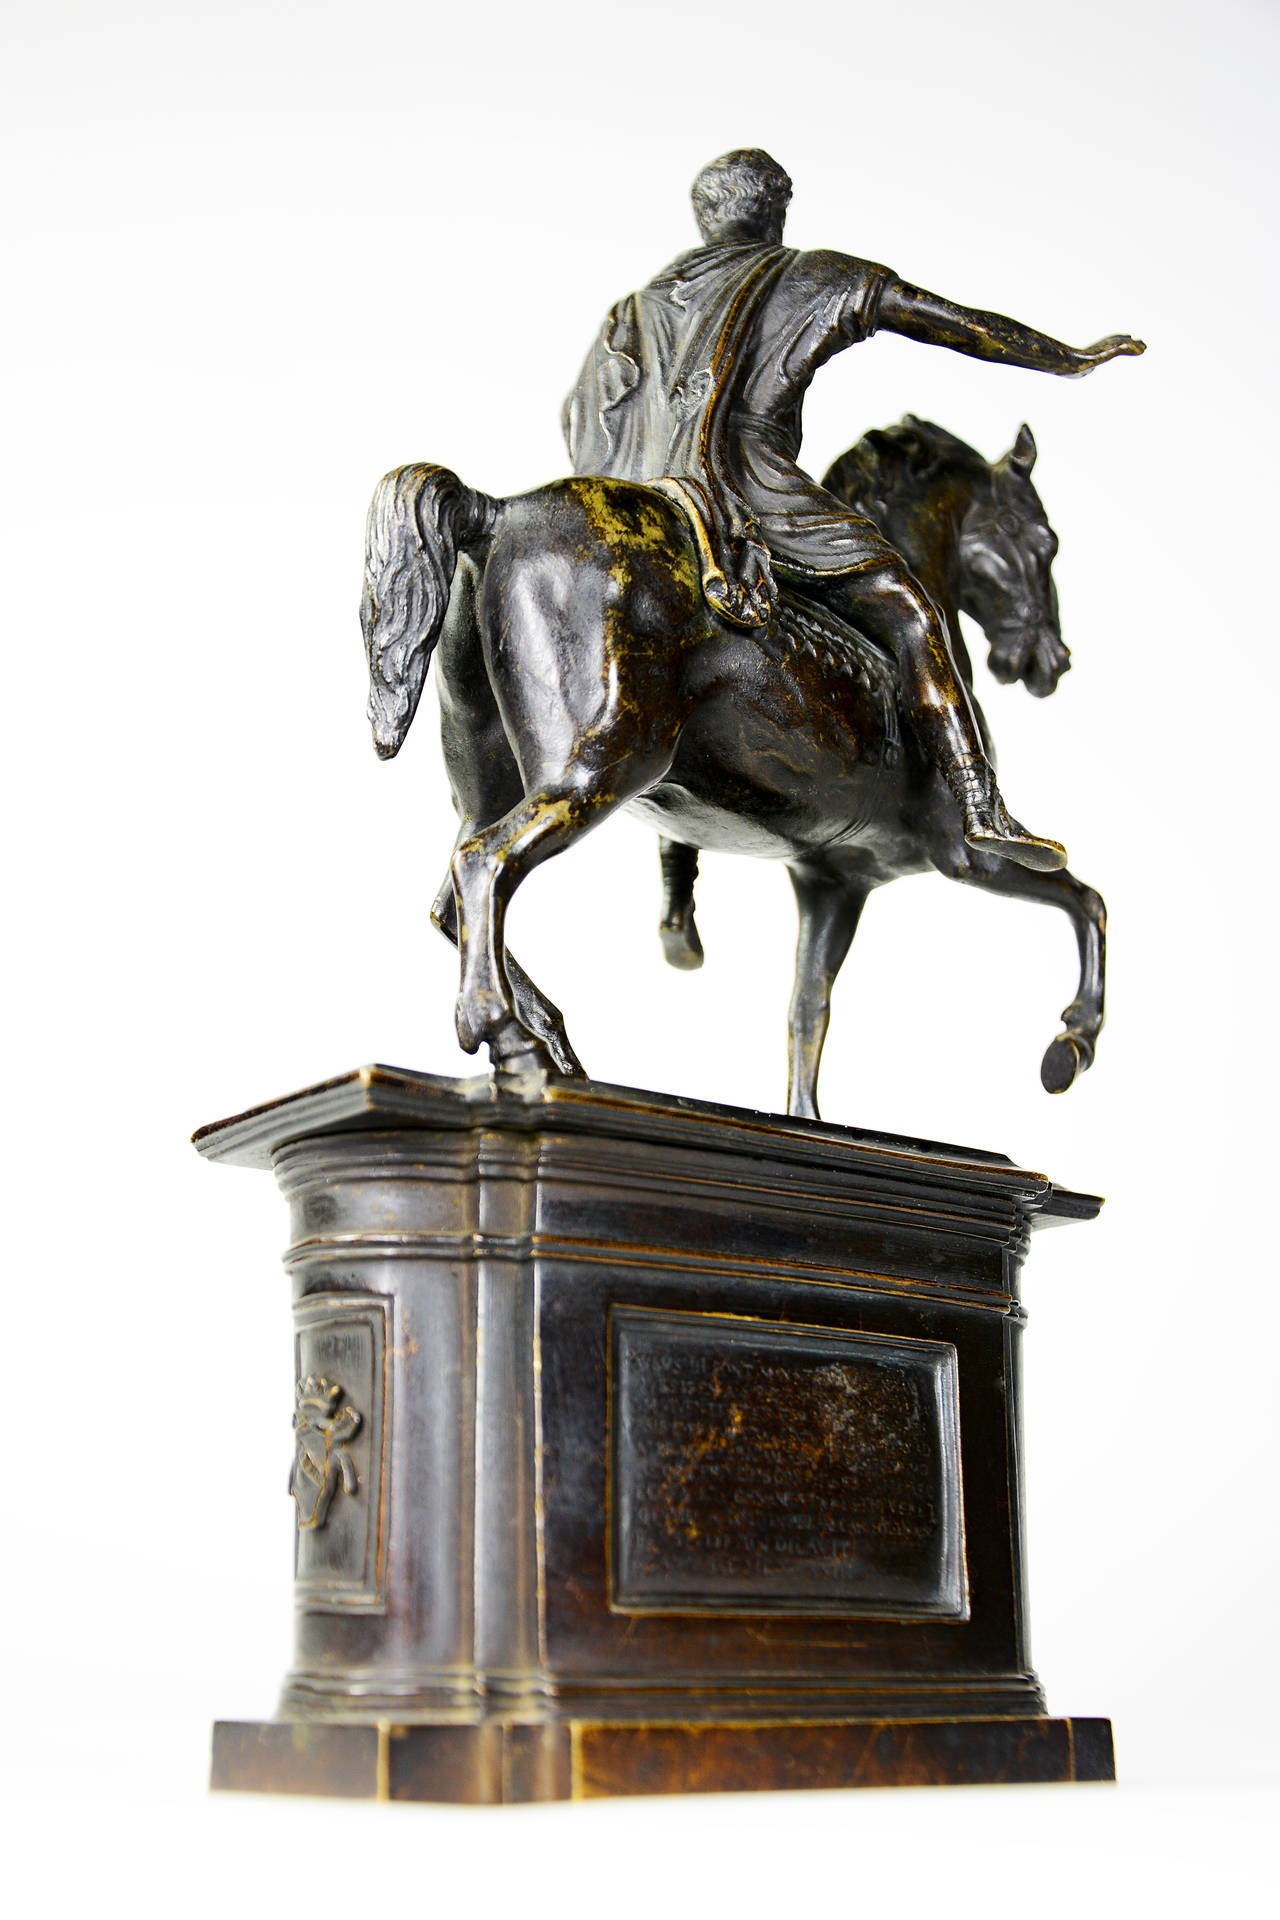 Italian c. 1790 Grand Tour bronze model of the Marcus Aurelius equestrian monument, Rome